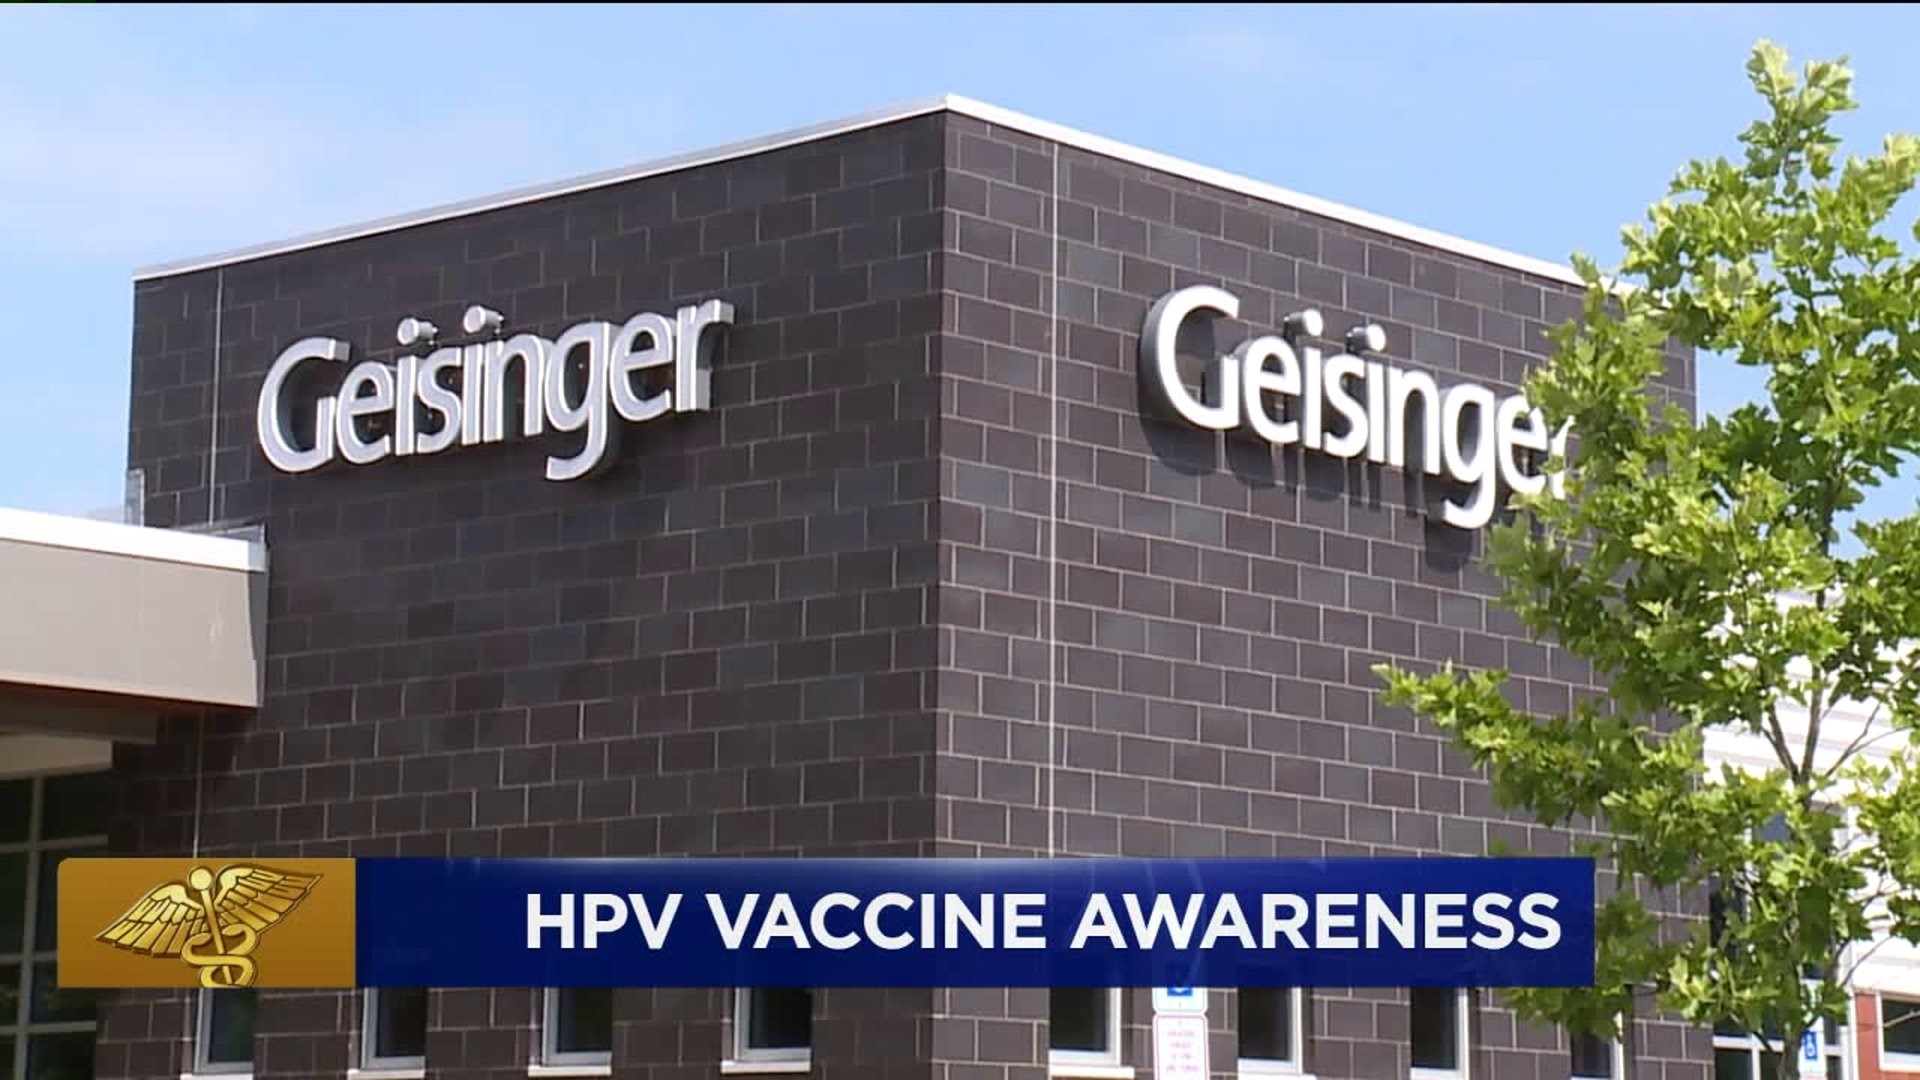 Healthwatch 16: HPV Vaccine